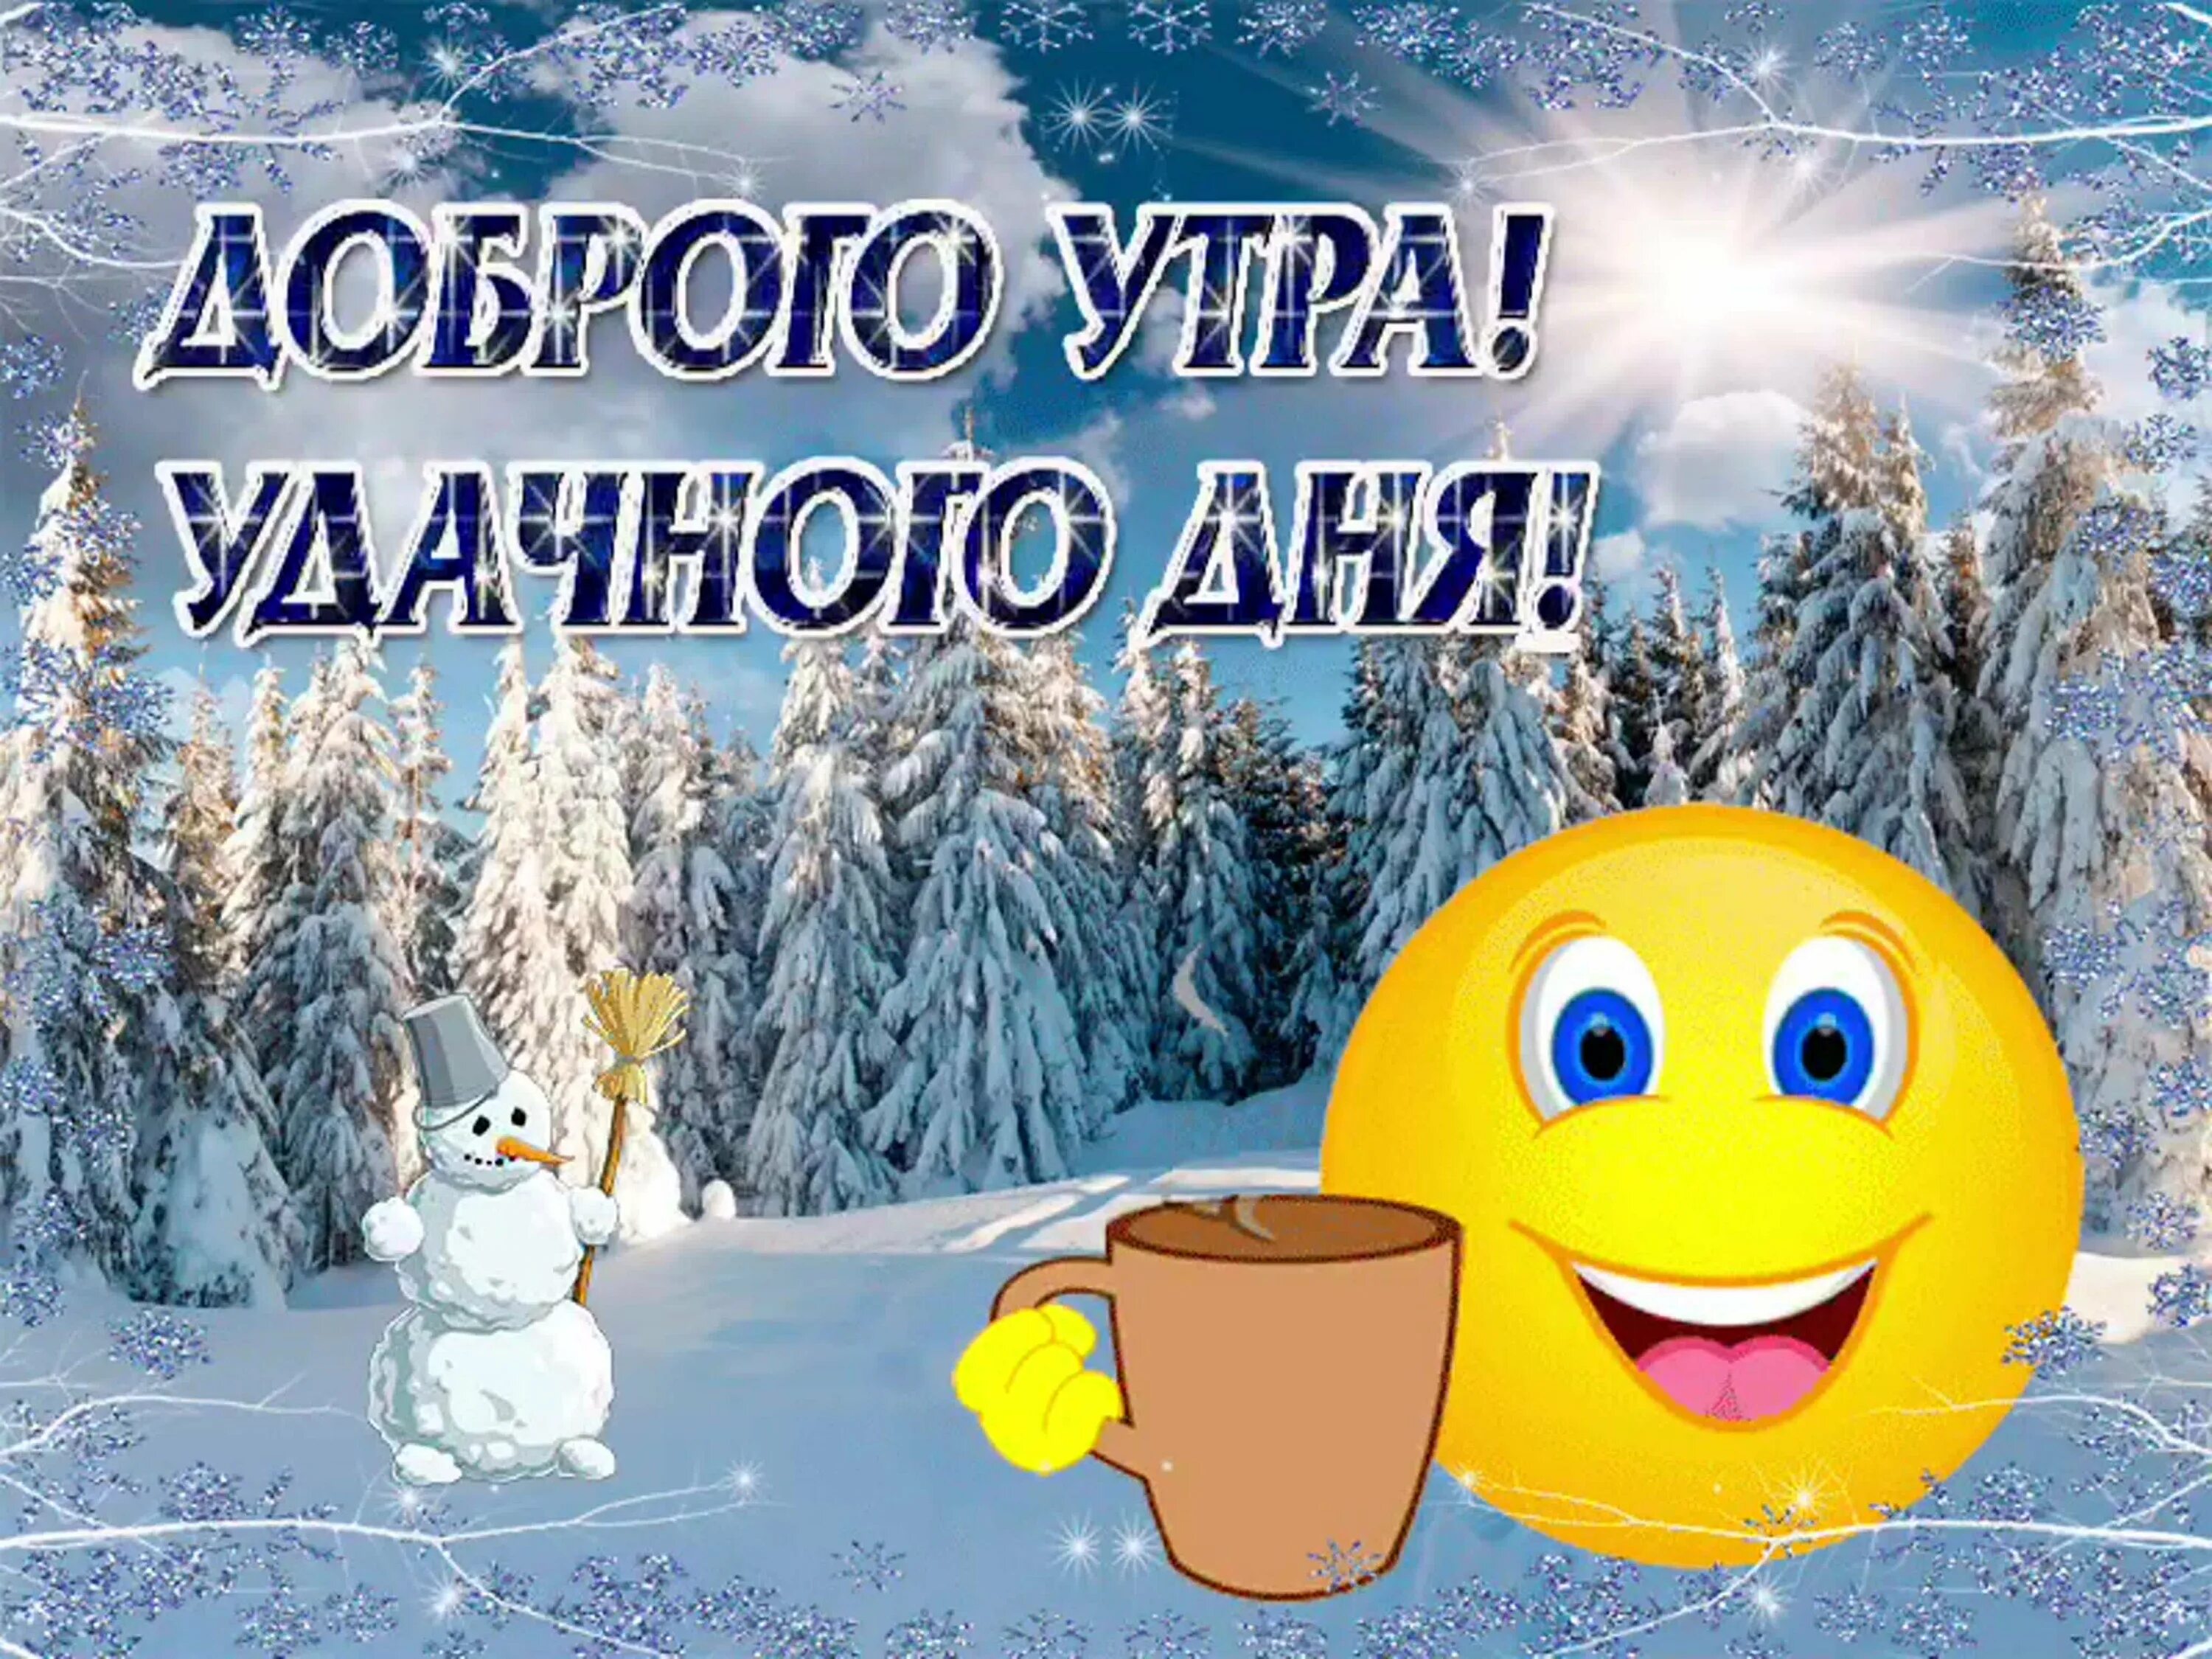 Доброе утро хорошего дня зимой картинки. Доброго зимнего утра и хорошего дня. Удачного зимнего дня и отличного настроения. Доброе утро хорошего дня зима. Доброе утро зимнее хорошего дея.